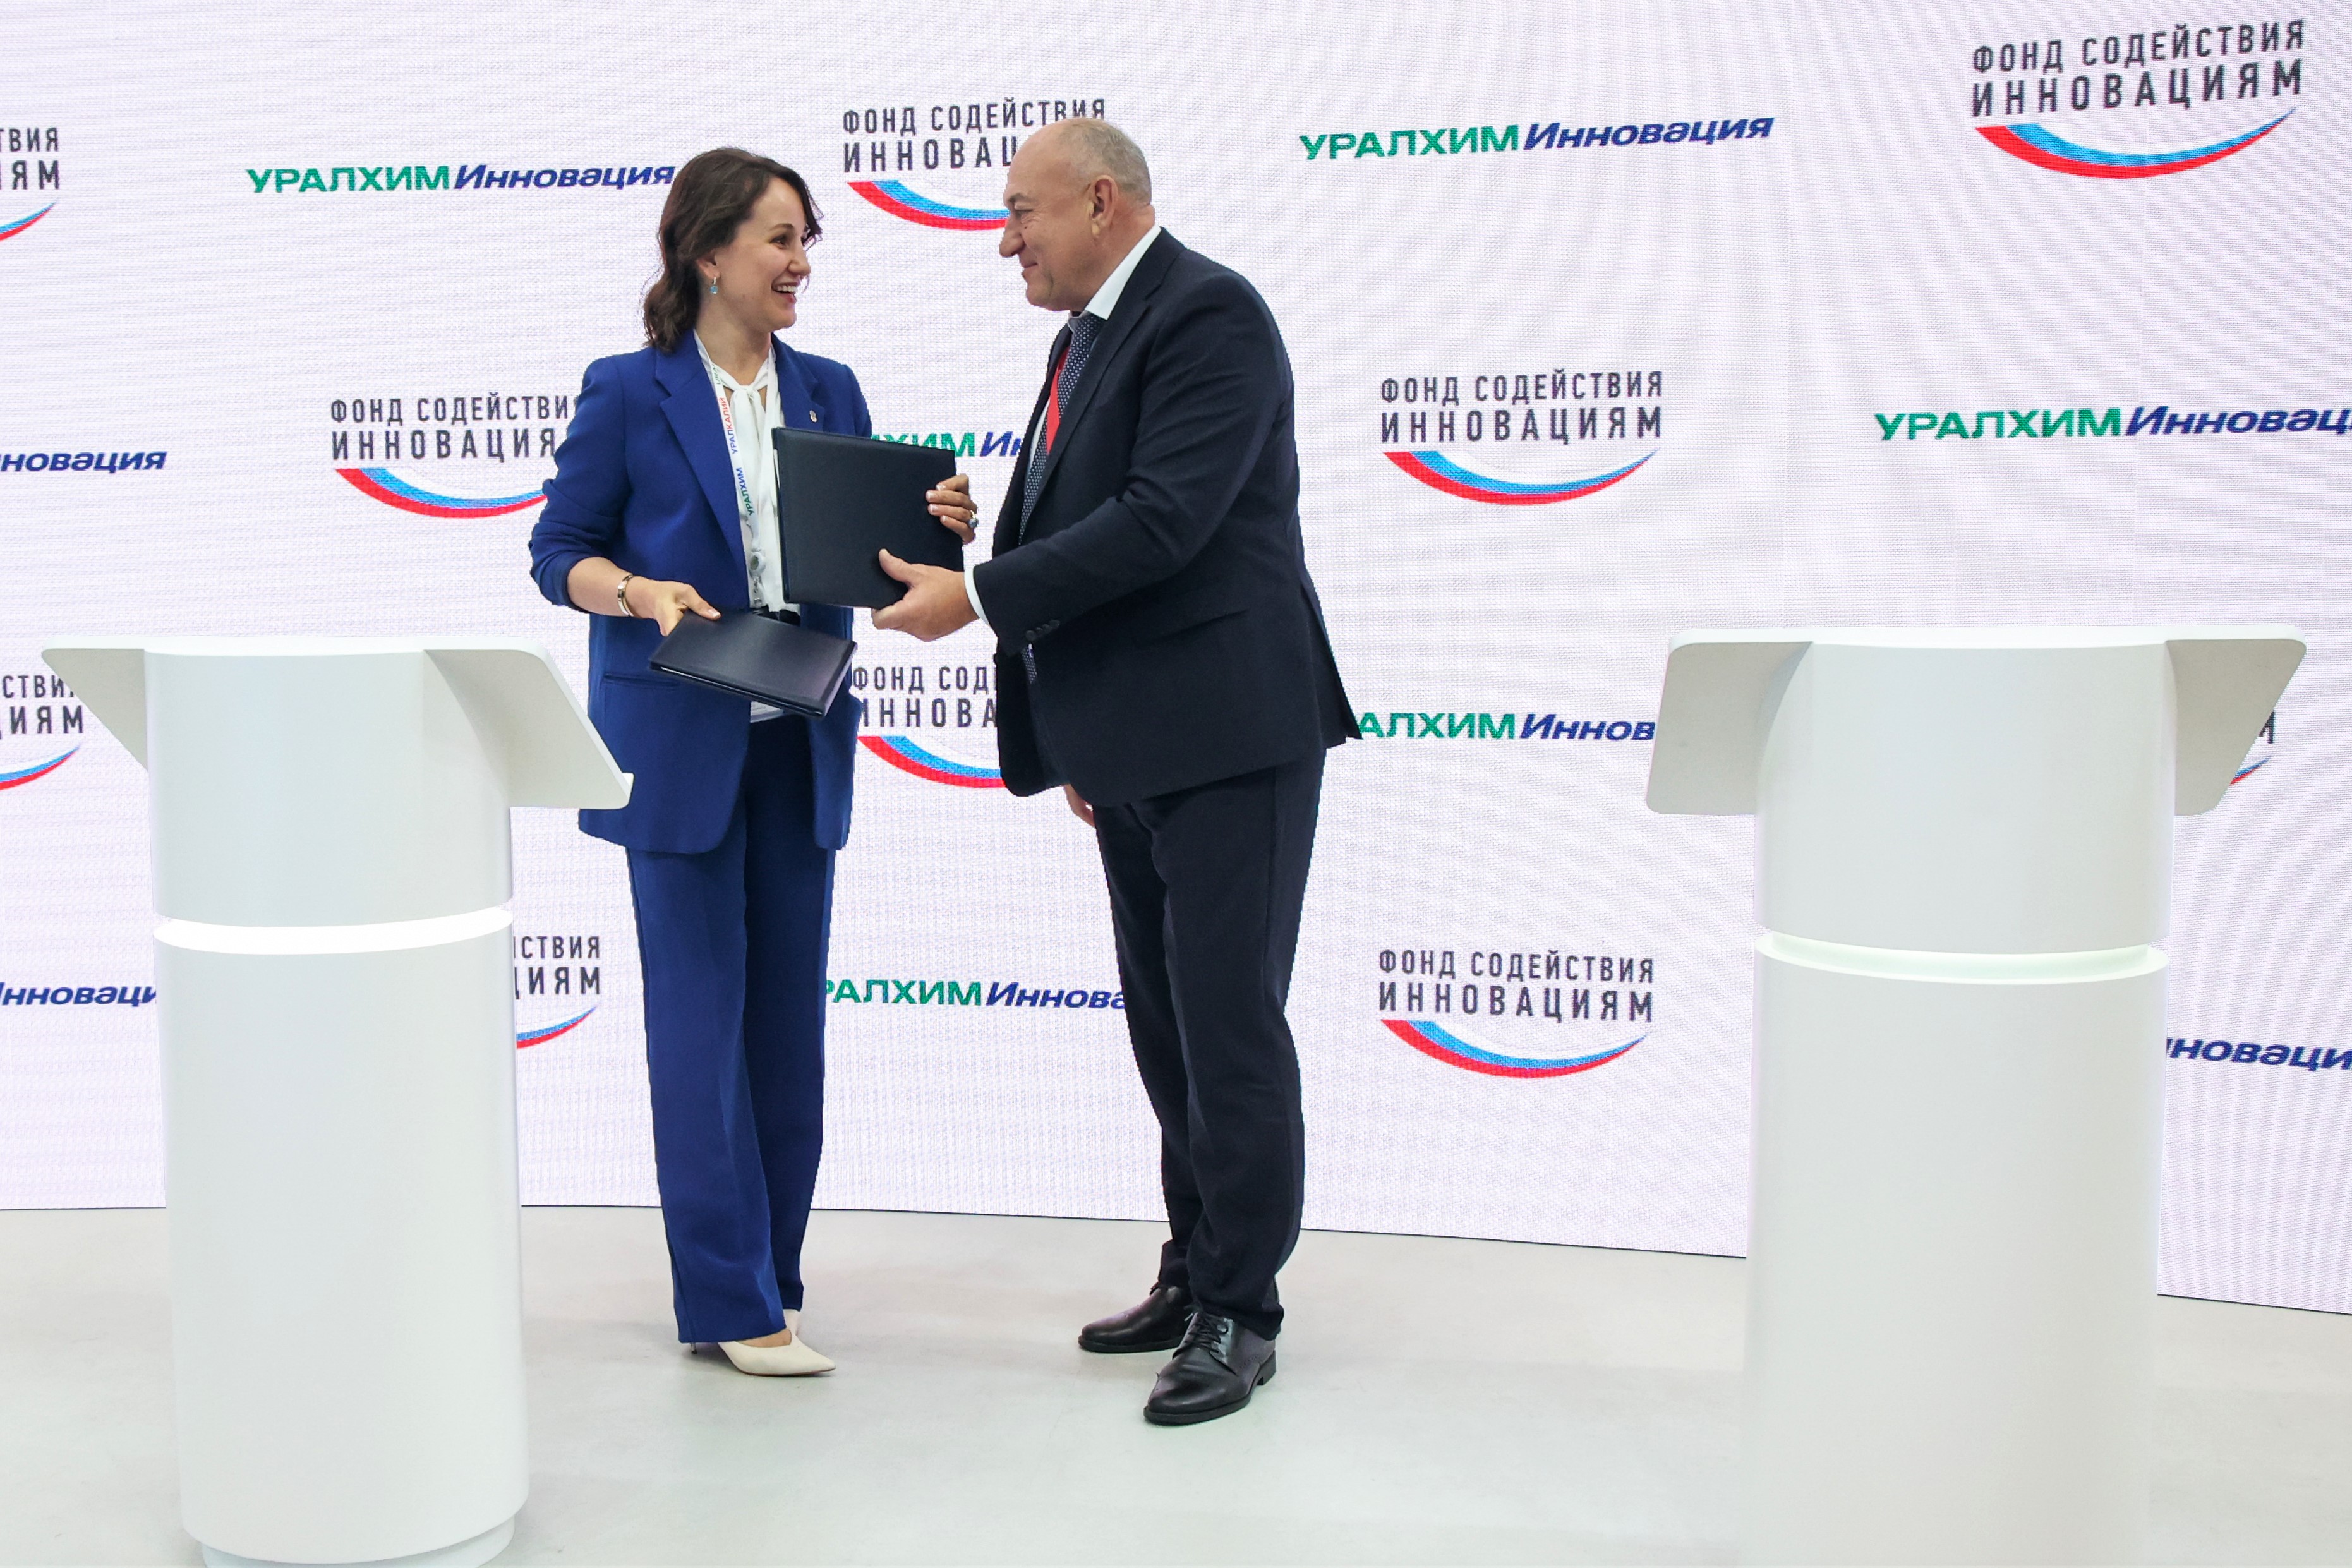 «Уралхим» и «Фонд содействия инновациям» договорились о сотрудничестве